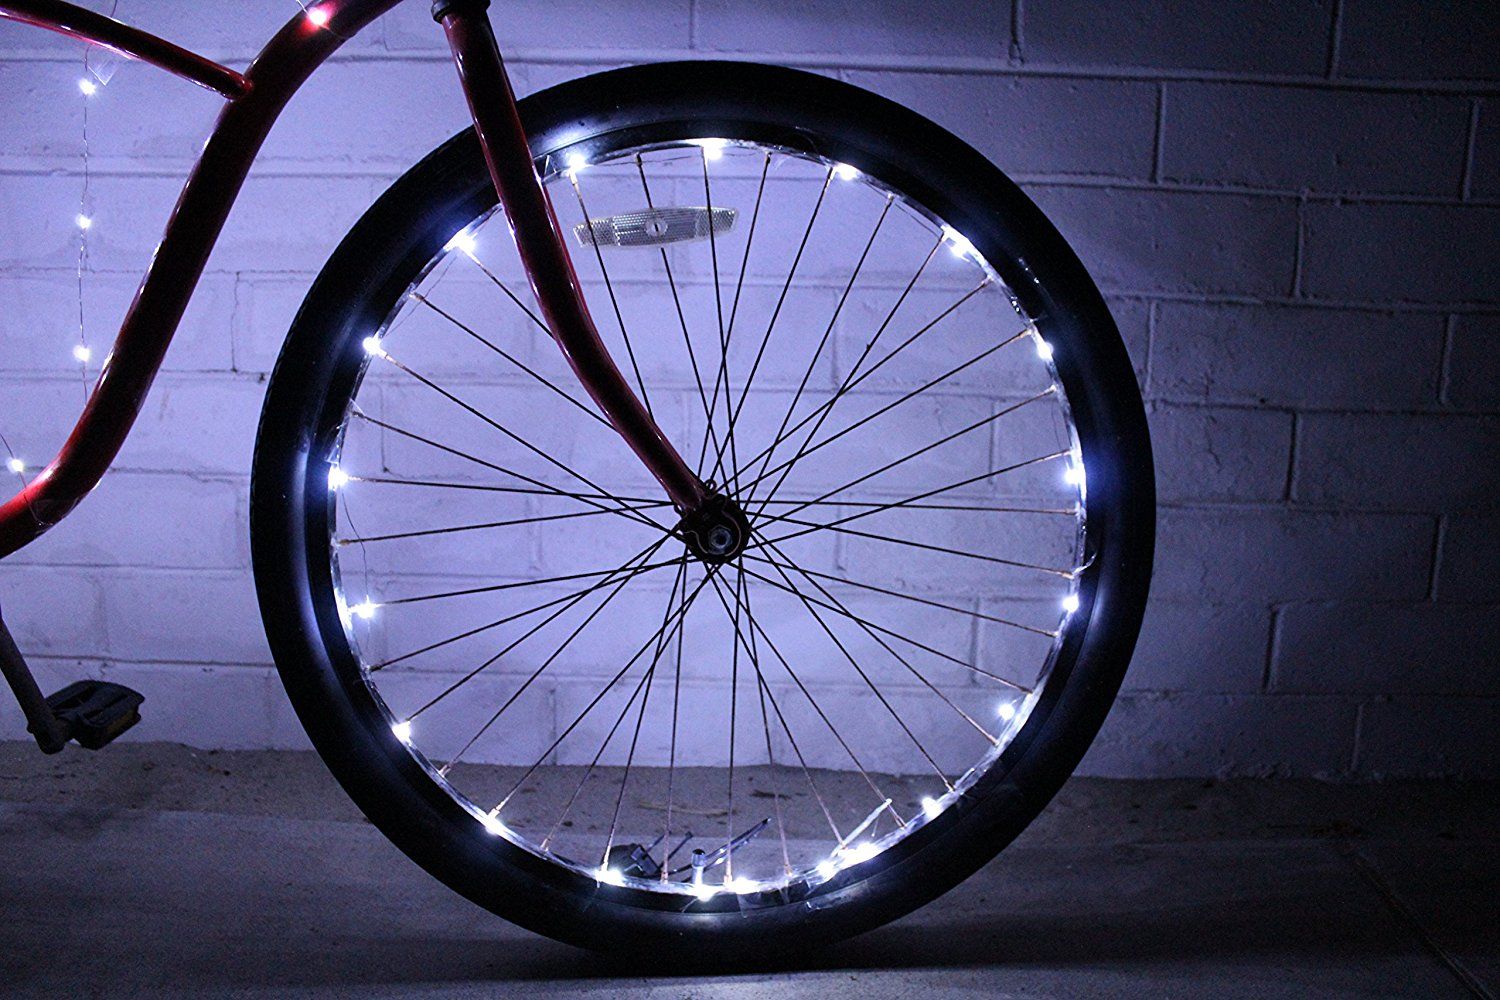 Glow Riders LED bike lights | cool tech stocking stuffers